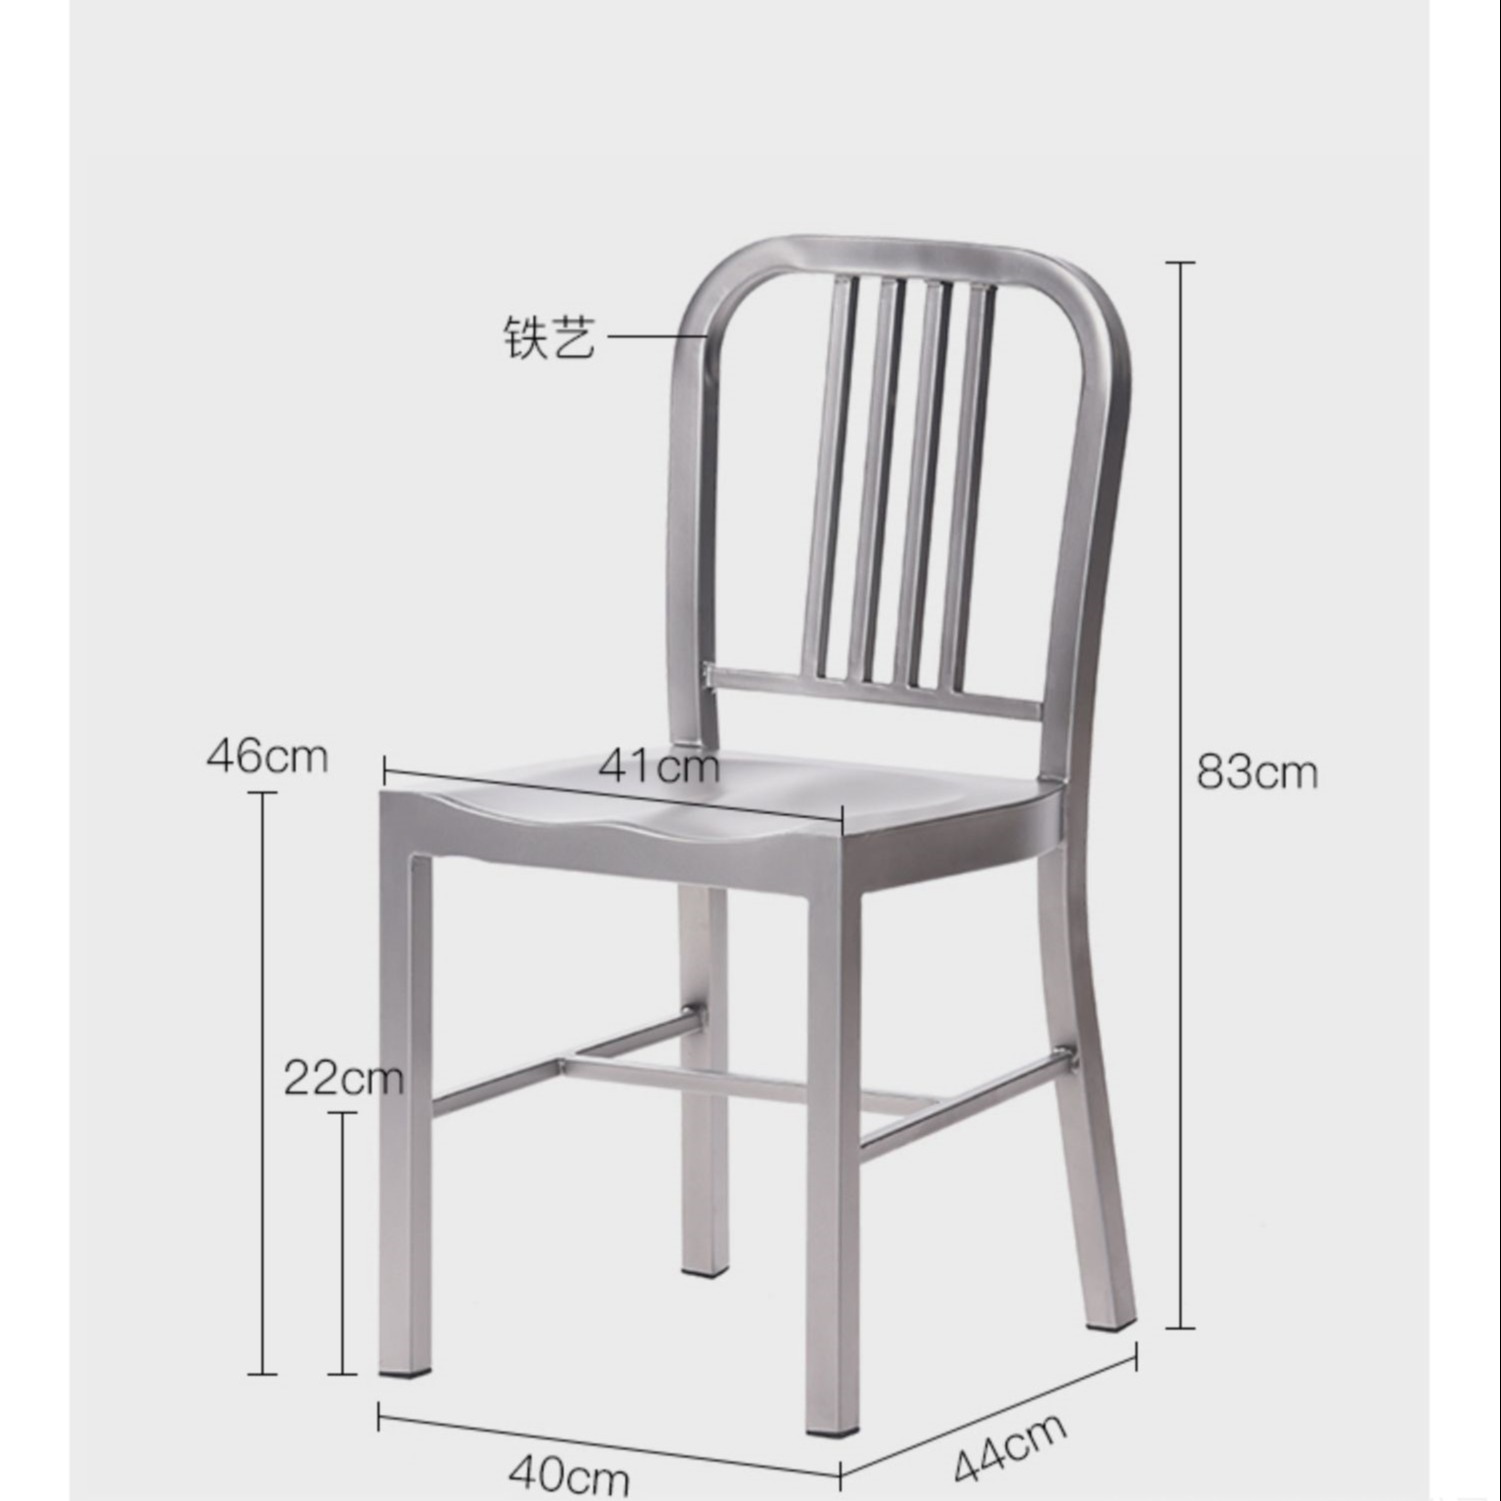 广东东莞家具生产美工乡村金属工业风靠背铁椅海军椅子咖啡厅彩色铁艺餐椅loft凳子